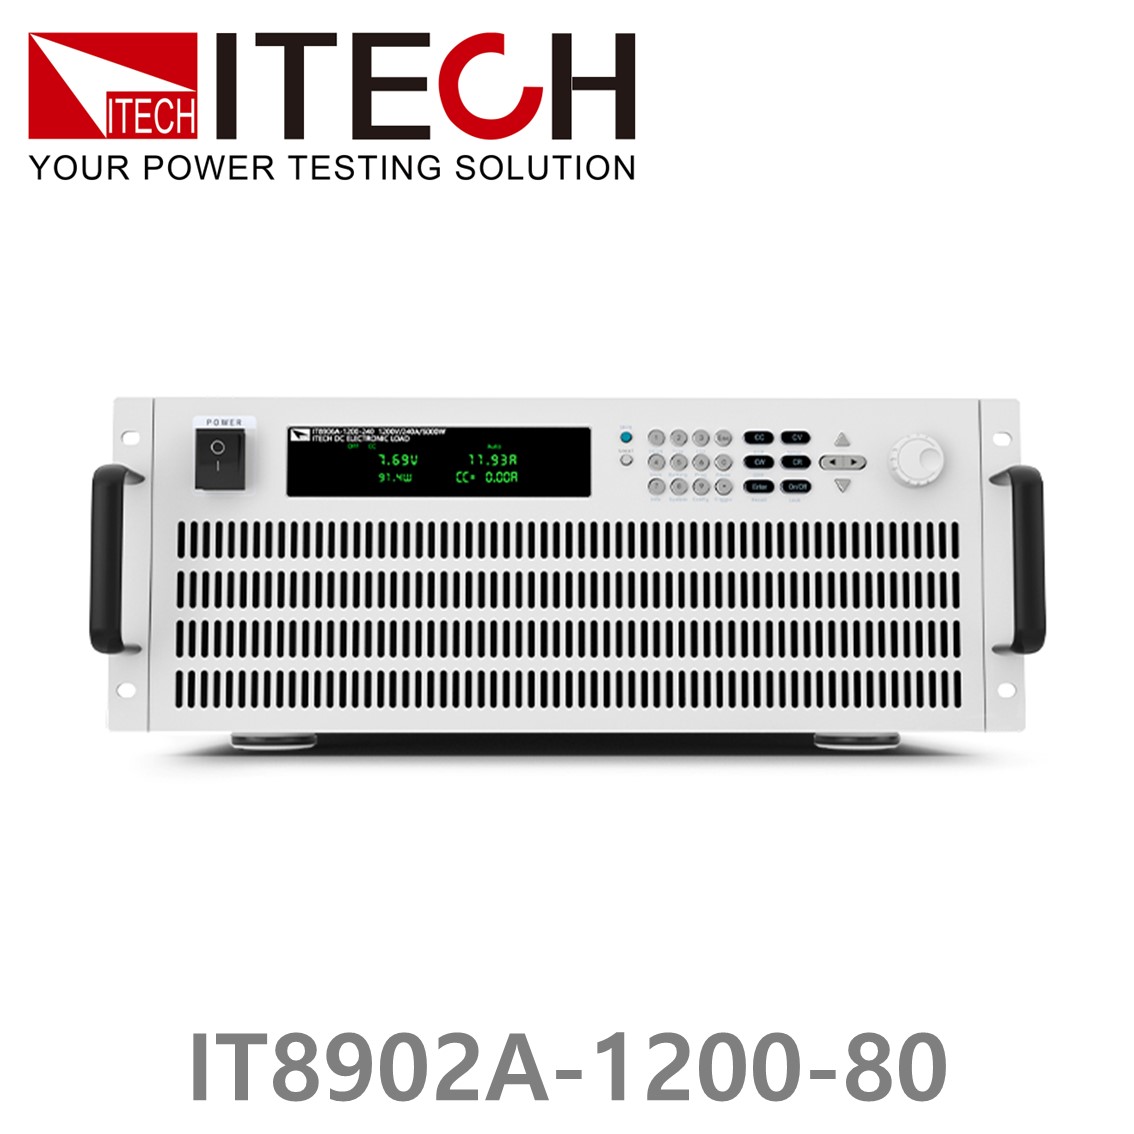 [ ITECH ] IT8902A-1200-80  고성능 고전력 DC 전자로드 1200V/80A/2kW (4U)